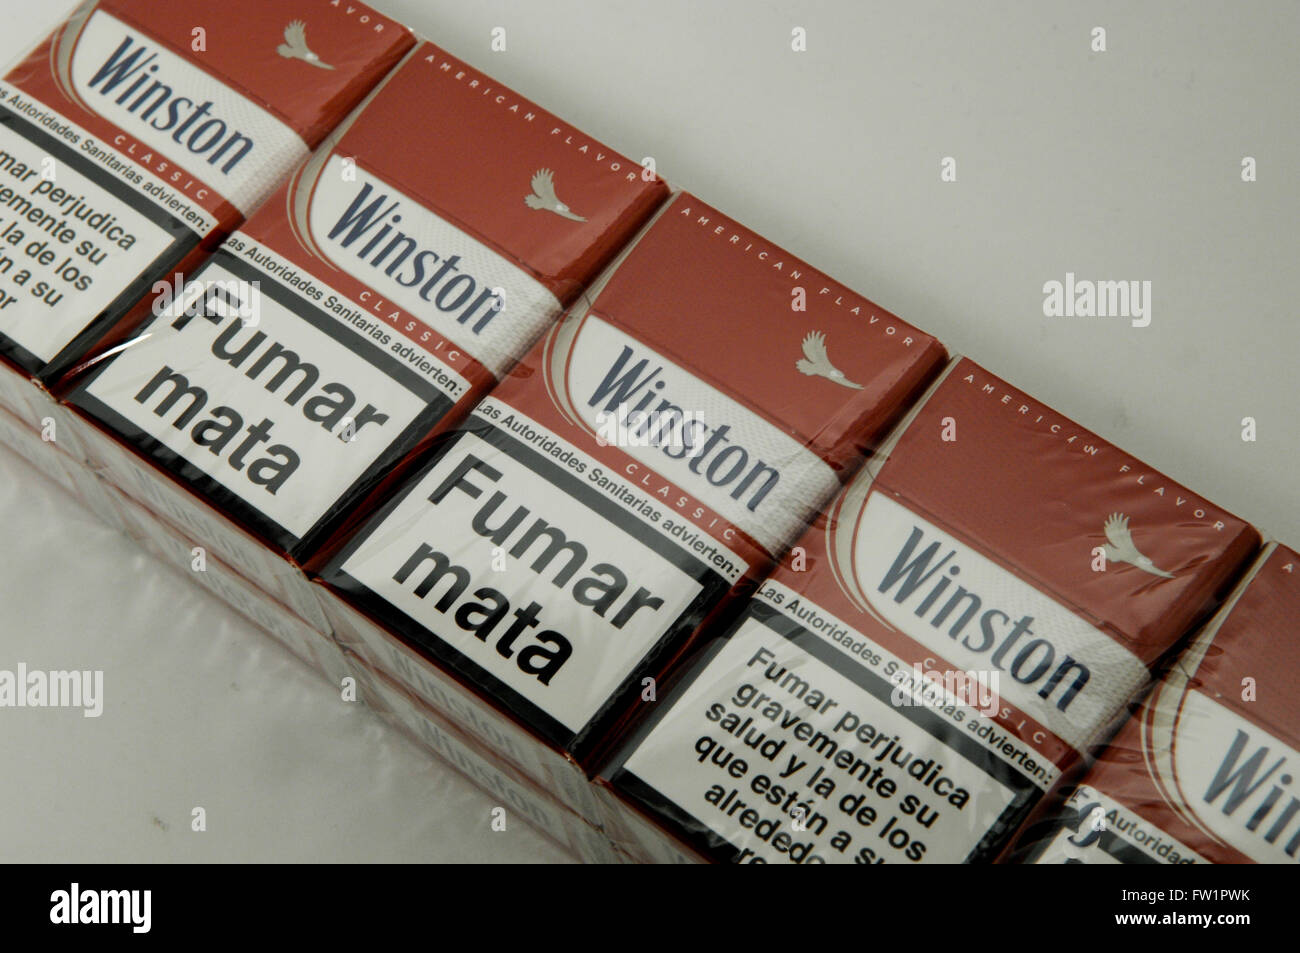 Cartouche De Cigarettes Winston Classic Le Tabac Photo Stock Alamy